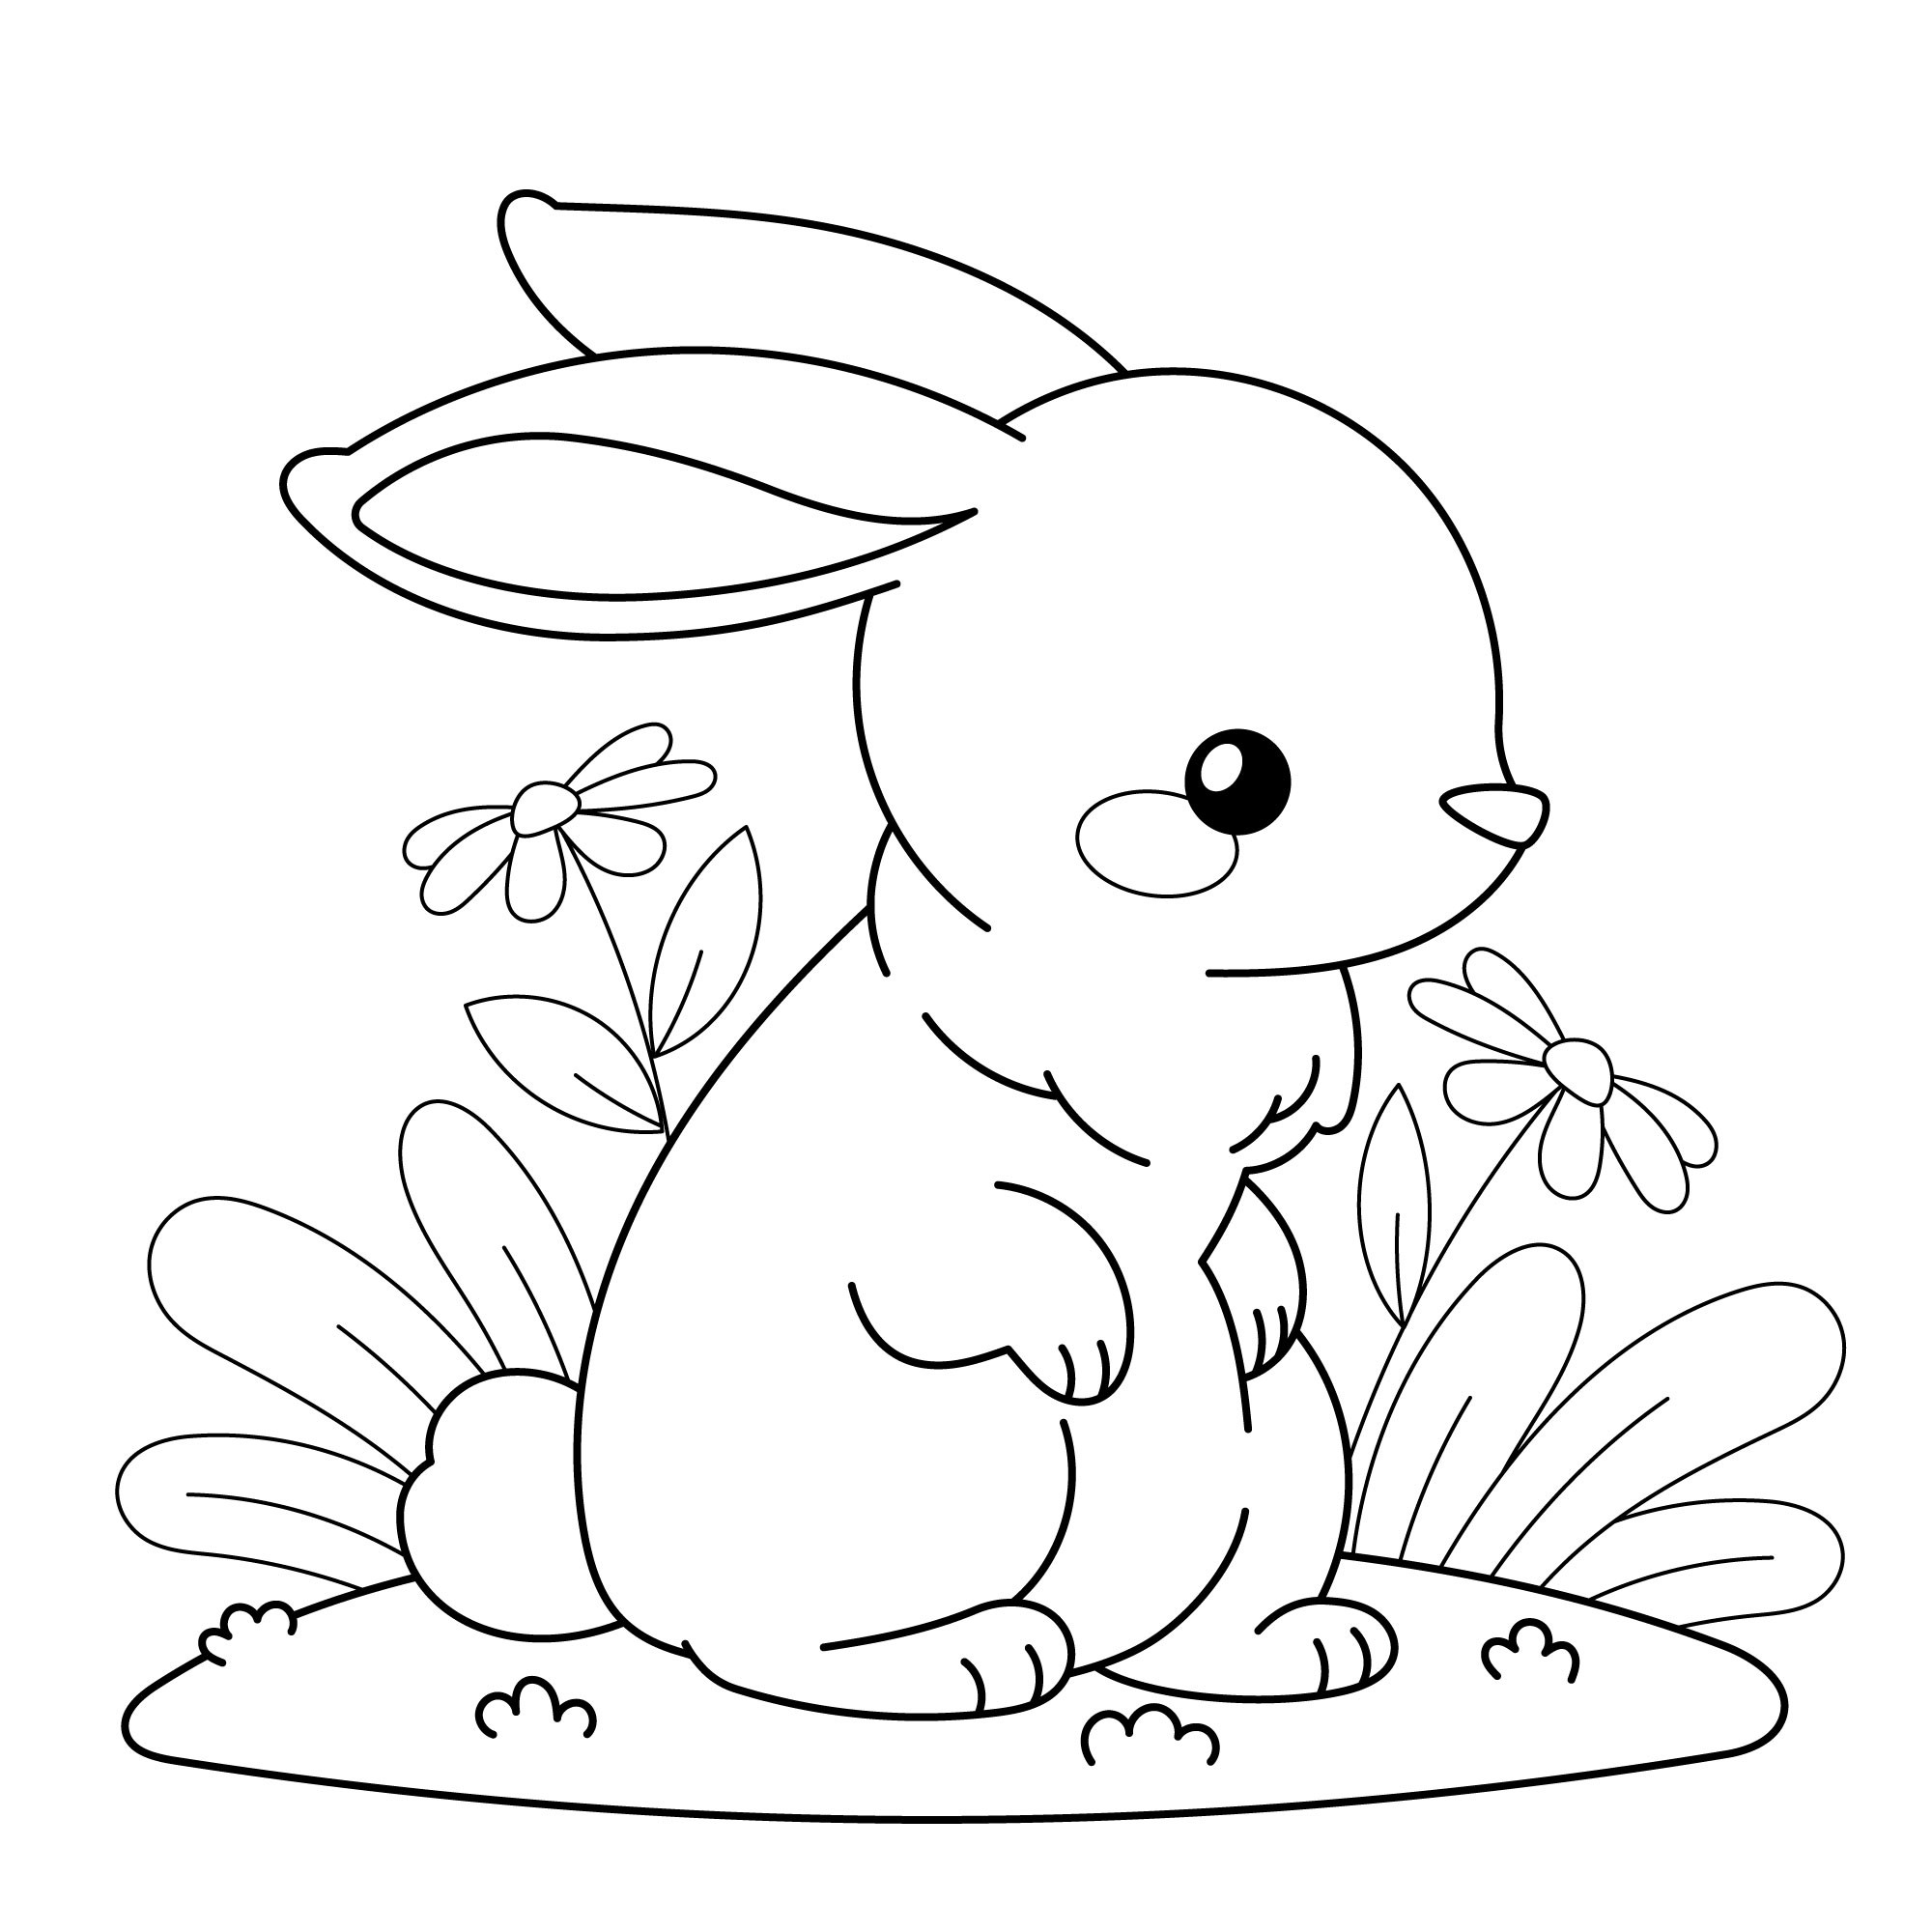 Раскраска для детей: заяц среди полевых цветов